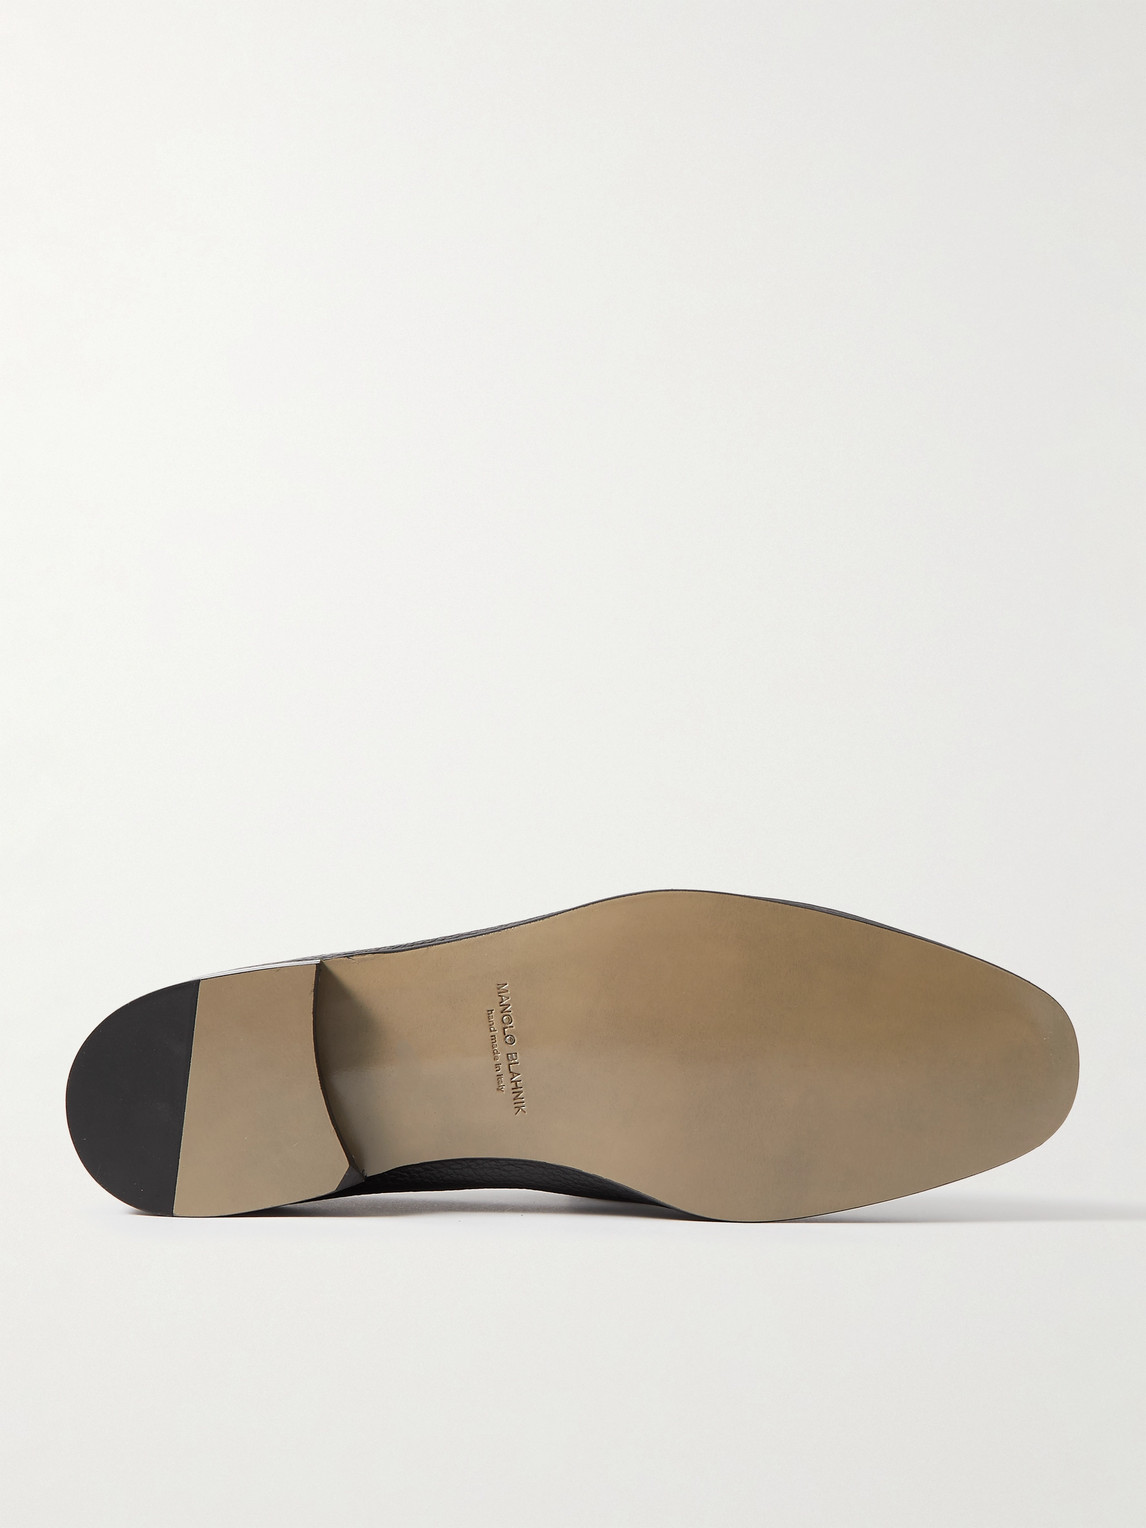 Shop Manolo Blahnik Truro Full-grain Leather Loafers In Black